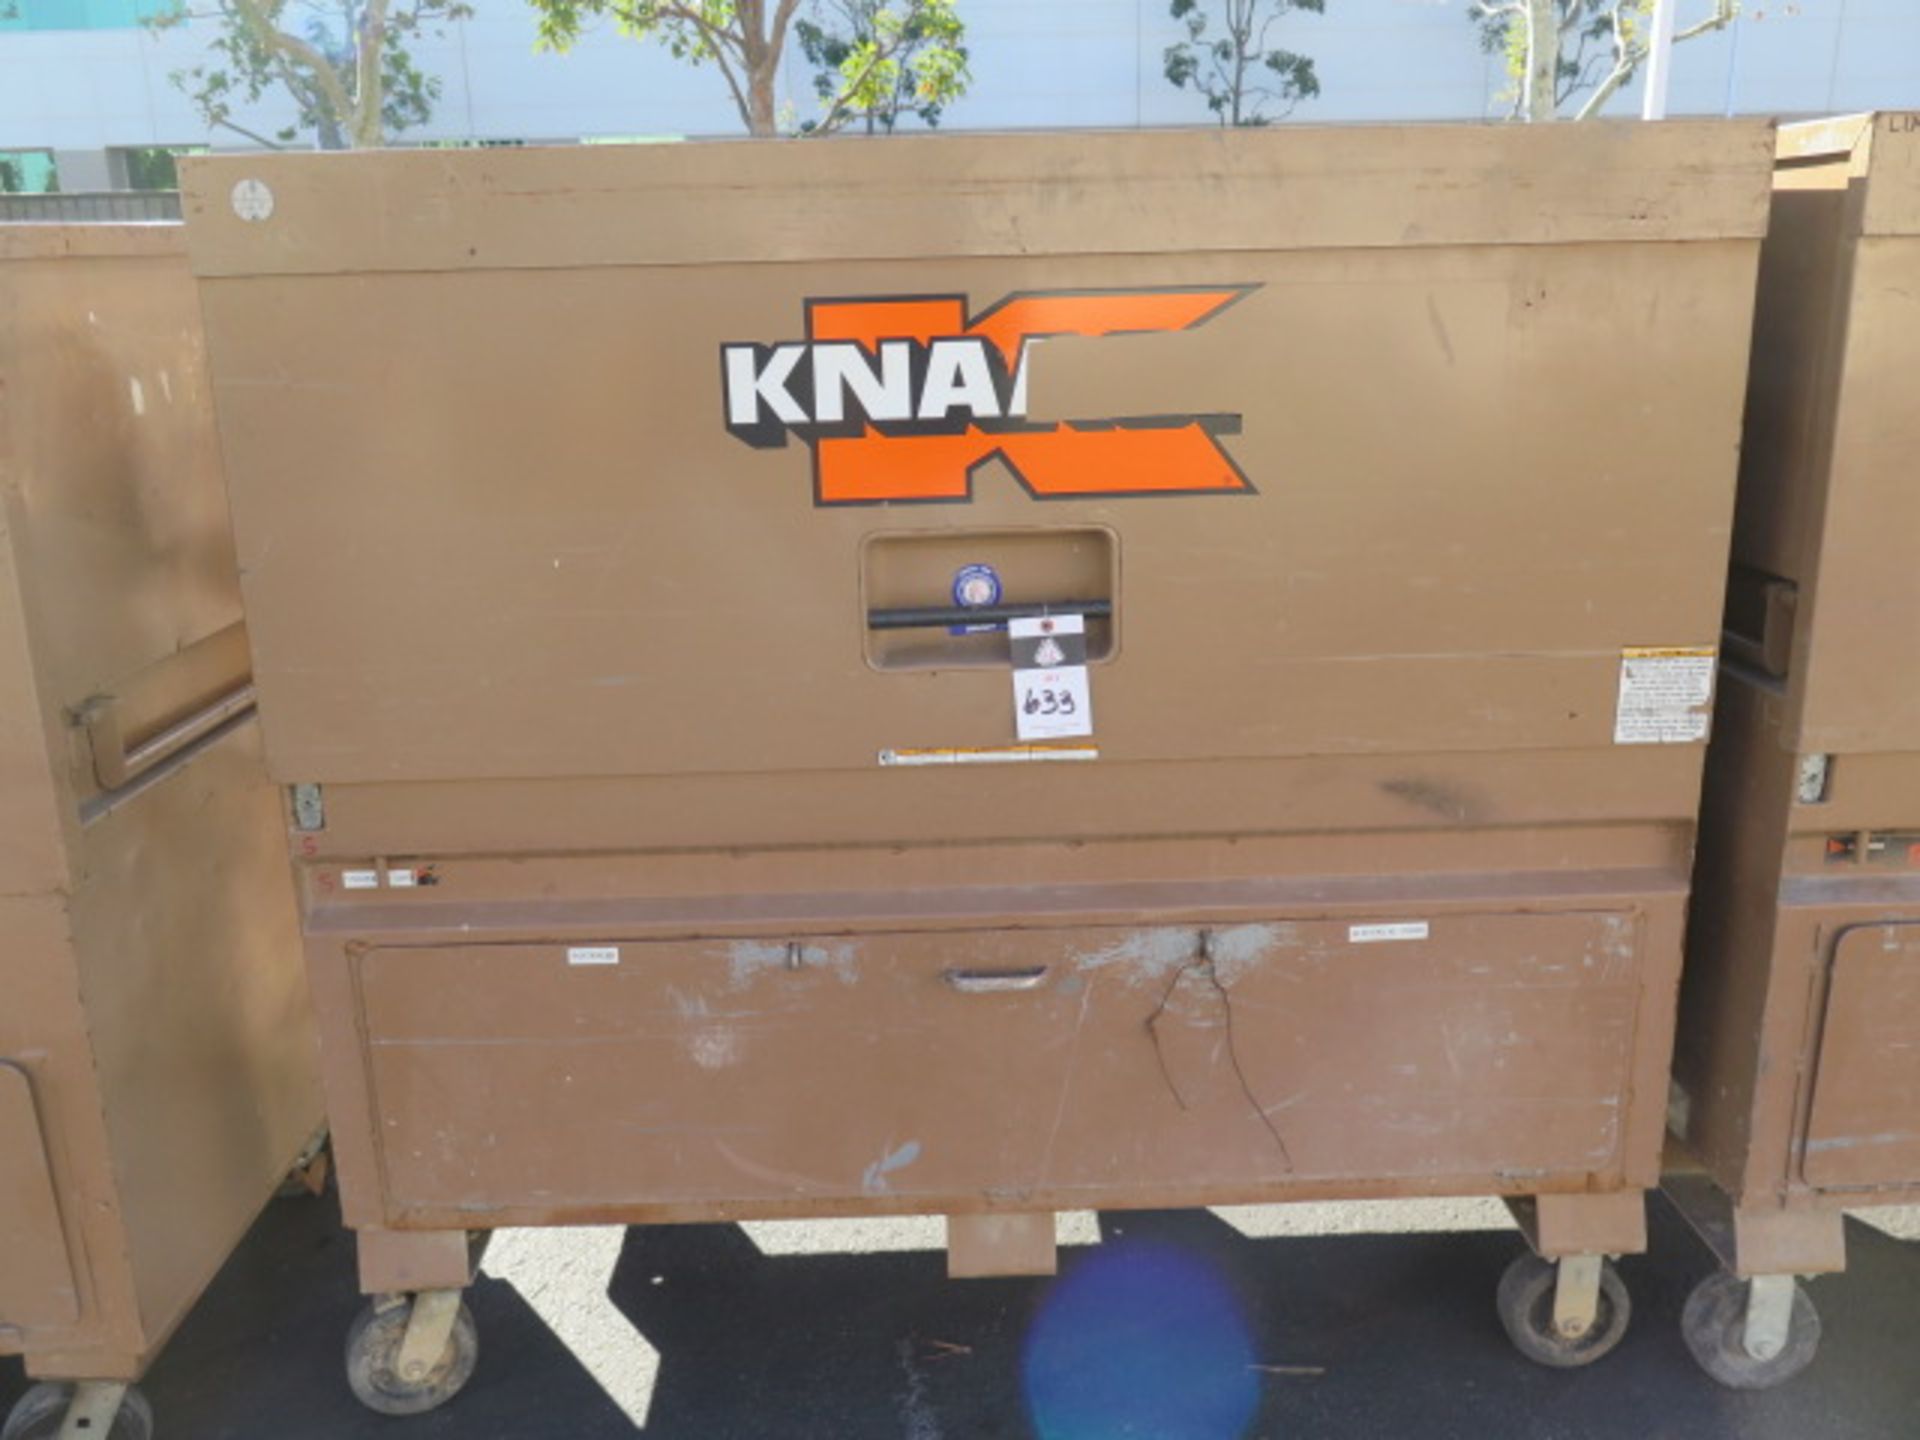 Knaack mdl. 89 Rolling Job Box (SOLD AS-IS - NO WARRANTY)